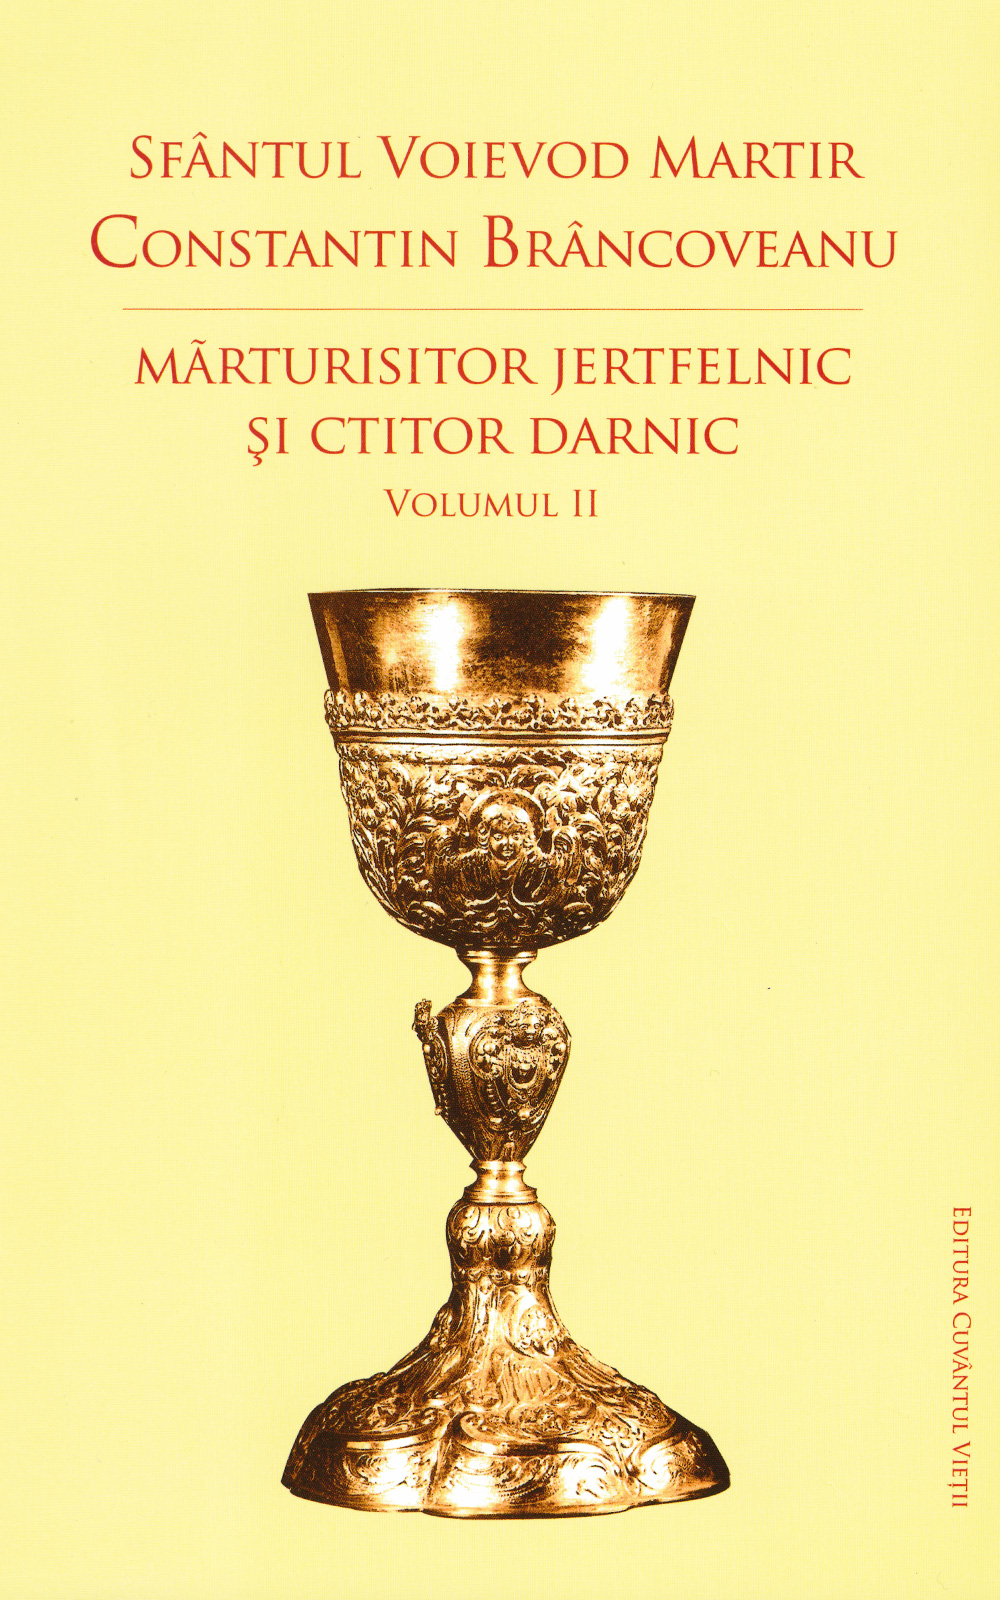 Sfântul Voievod Martir Constantin Brâncoveanu - mărturisitor jertfelnic și ctitor darnic (vol. II)